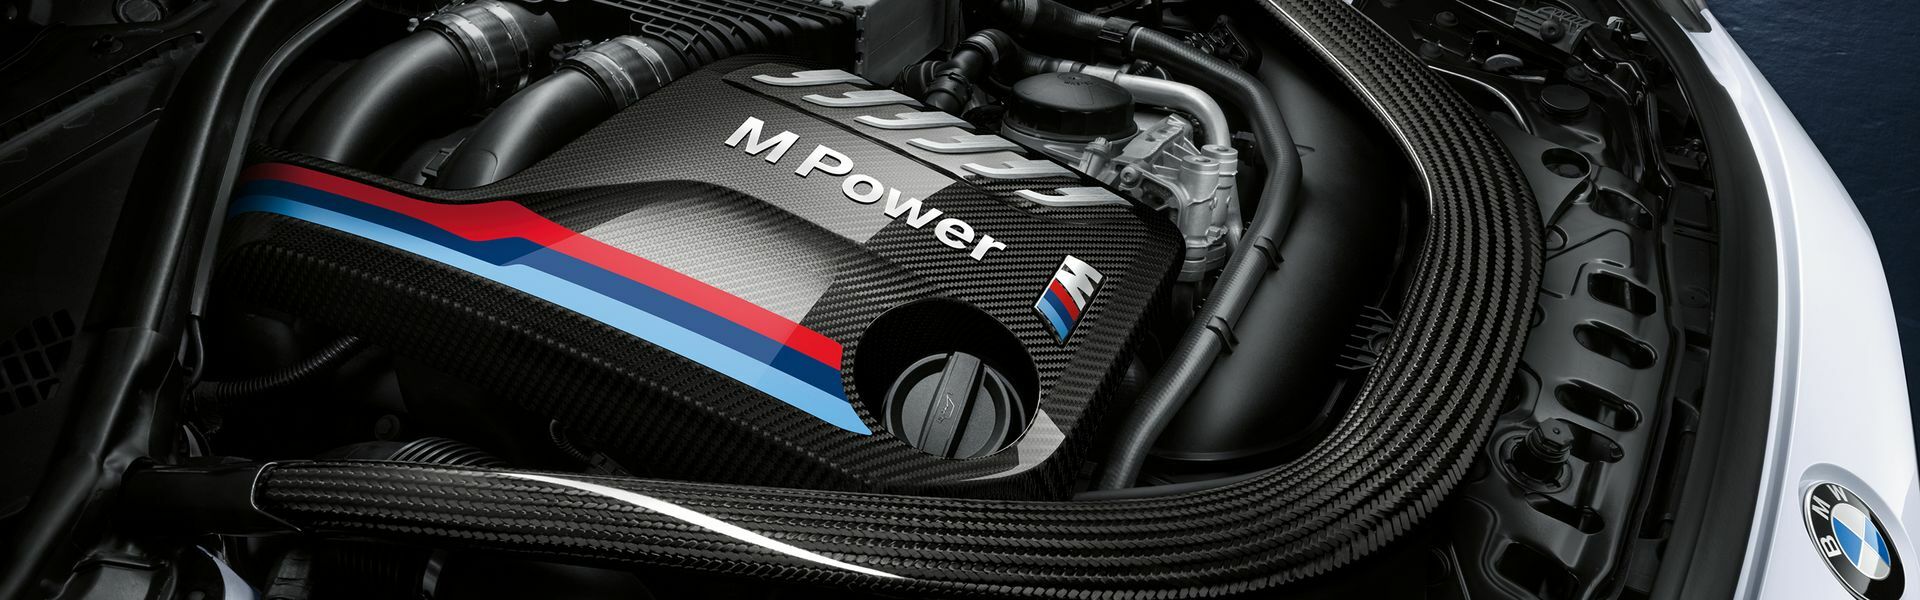 Zvýšení výkonu/ Softwarové úpravy/ Drobné performance díly pro automobil BMW Z3M